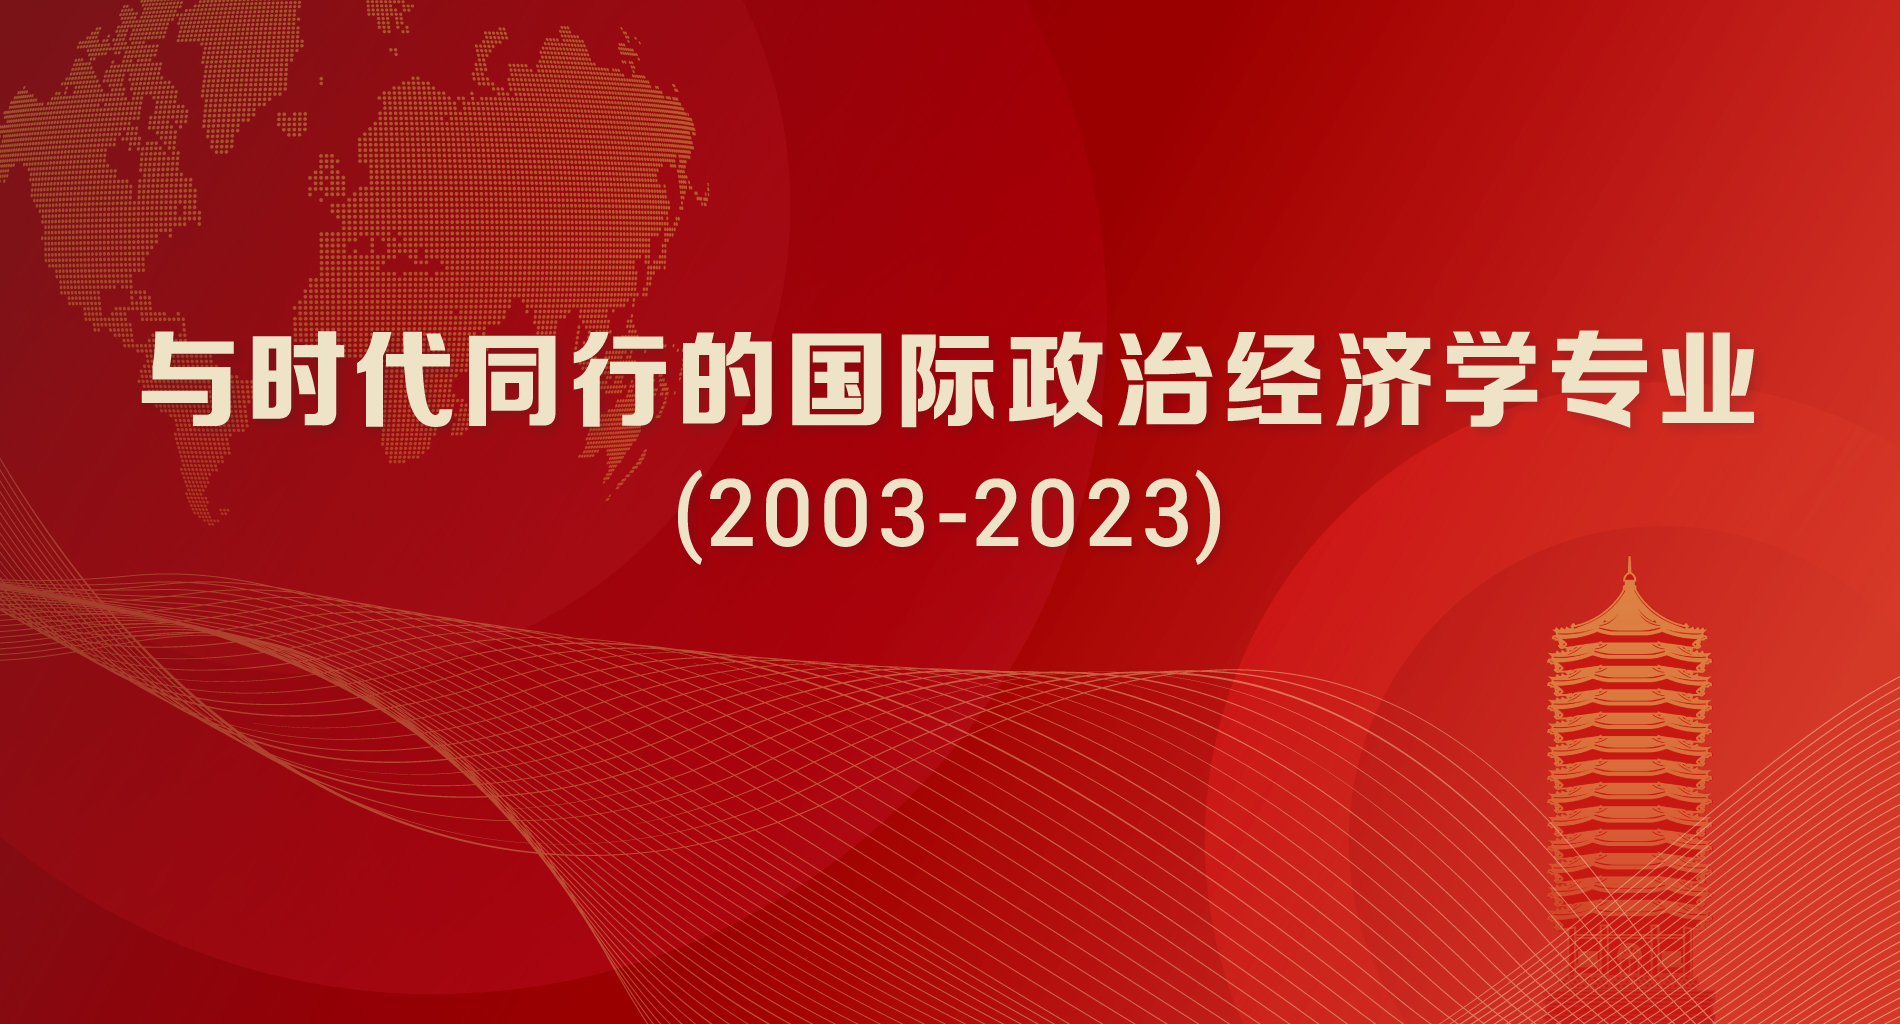 与时代同行的国际政治经济学专业(2003-2023)